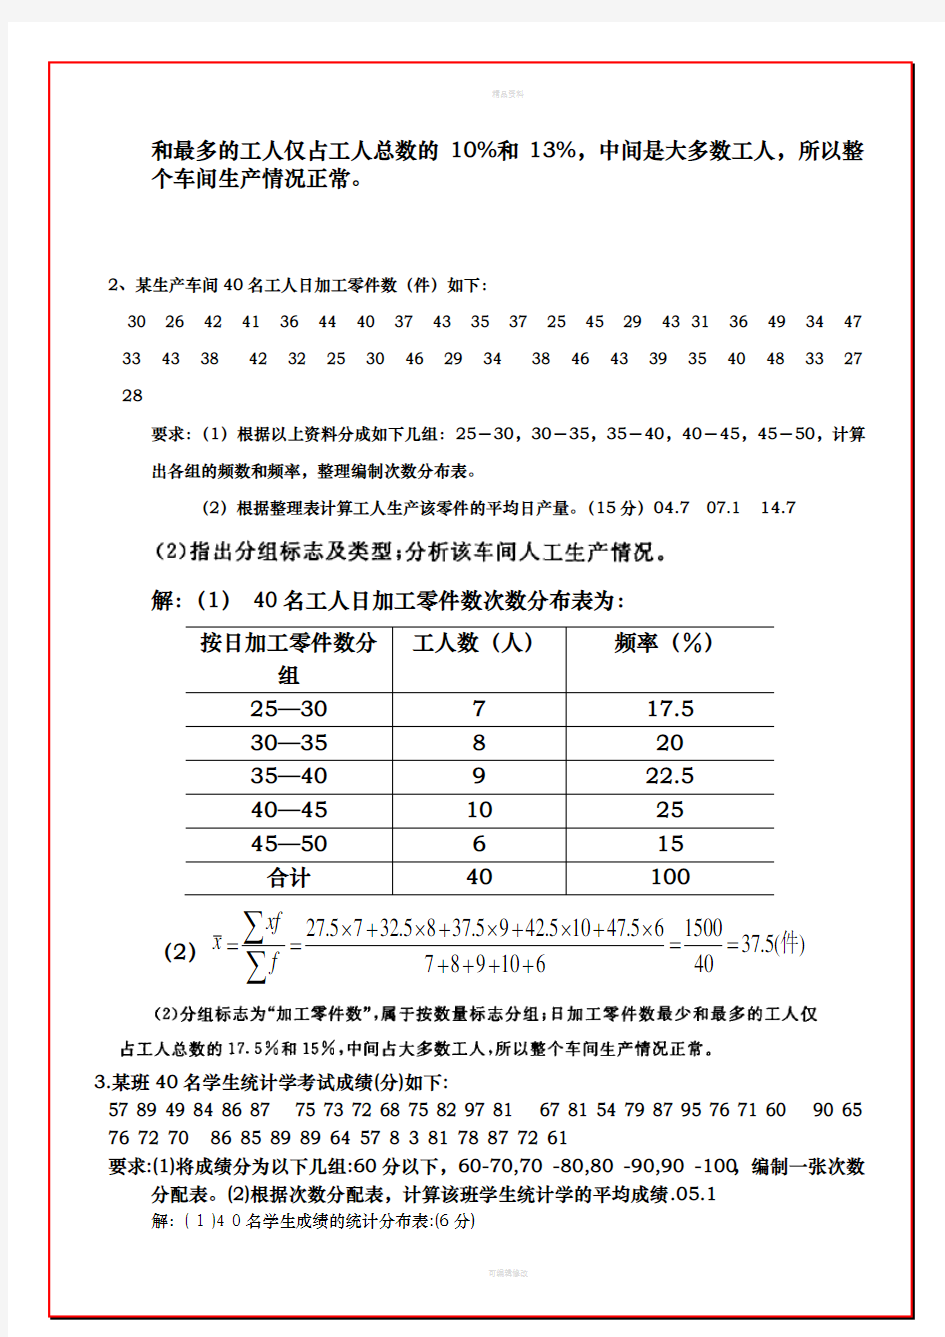 统计学原理计算分析题教学题目答案2014.11.11